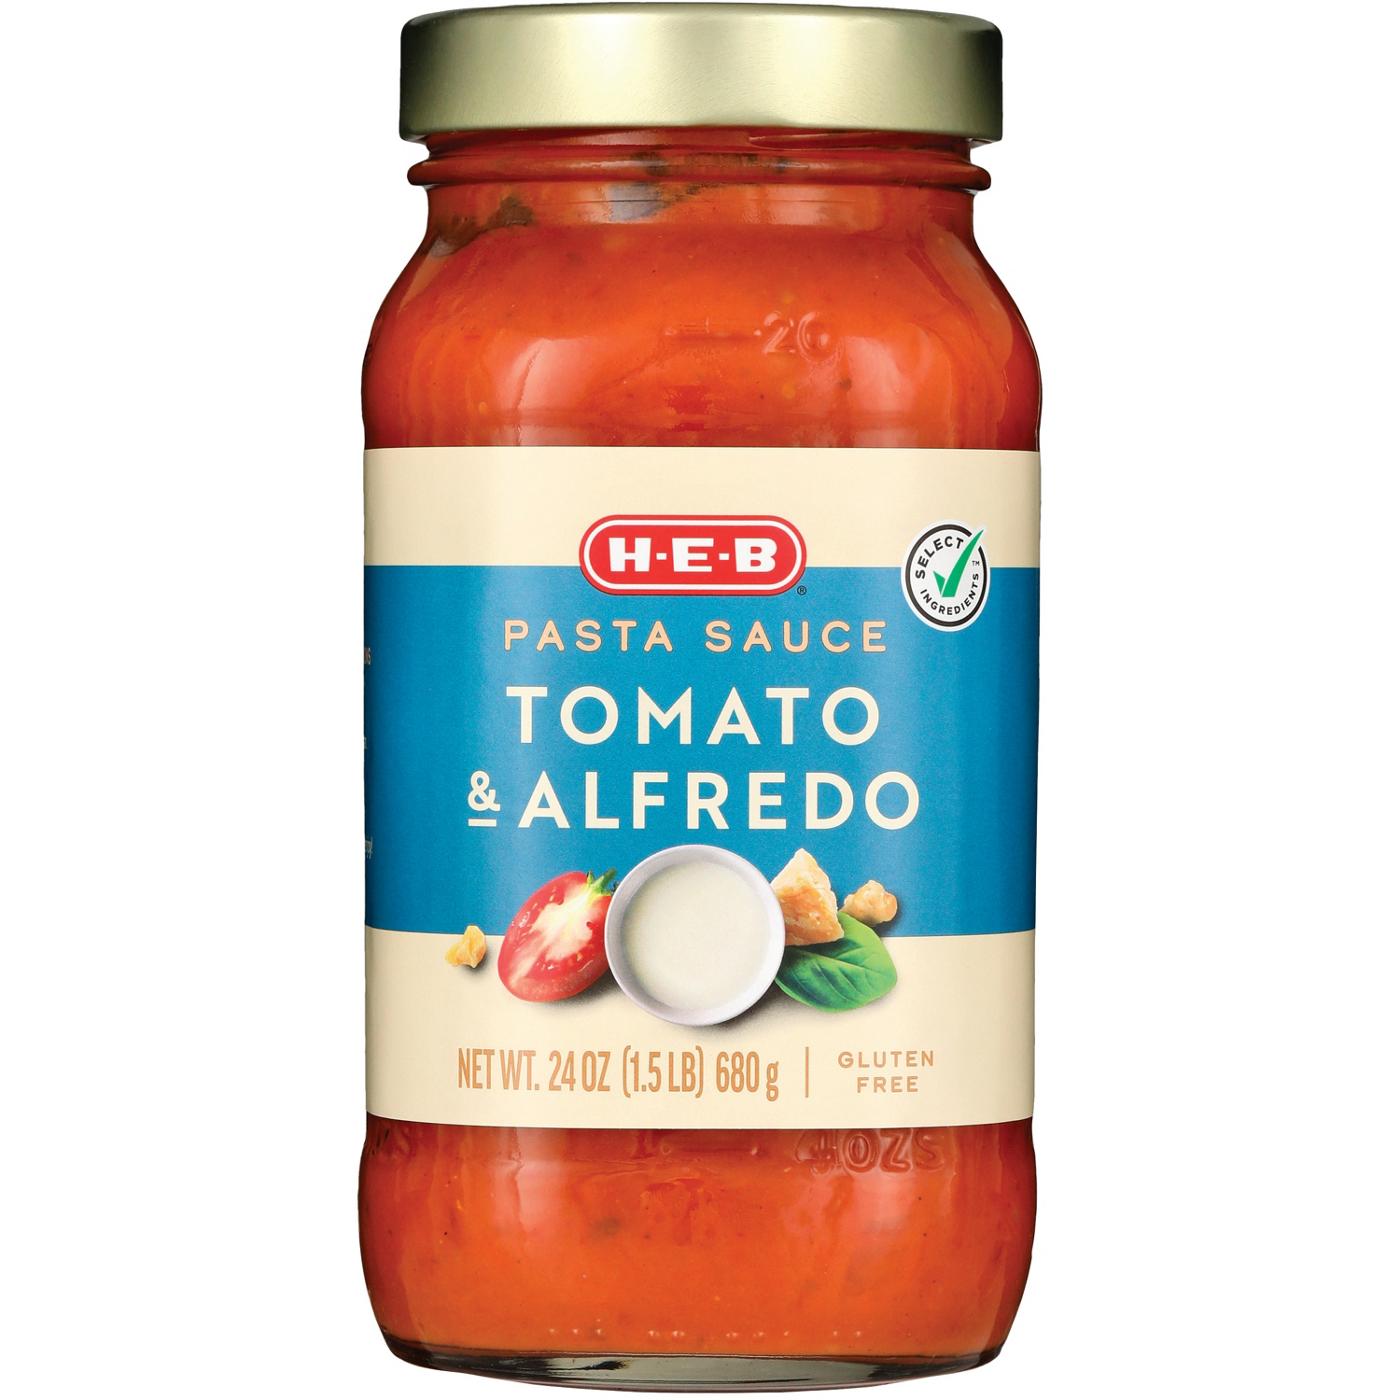 H-E-B Tomato & Alfredo Pasta Sauce; image 1 of 2